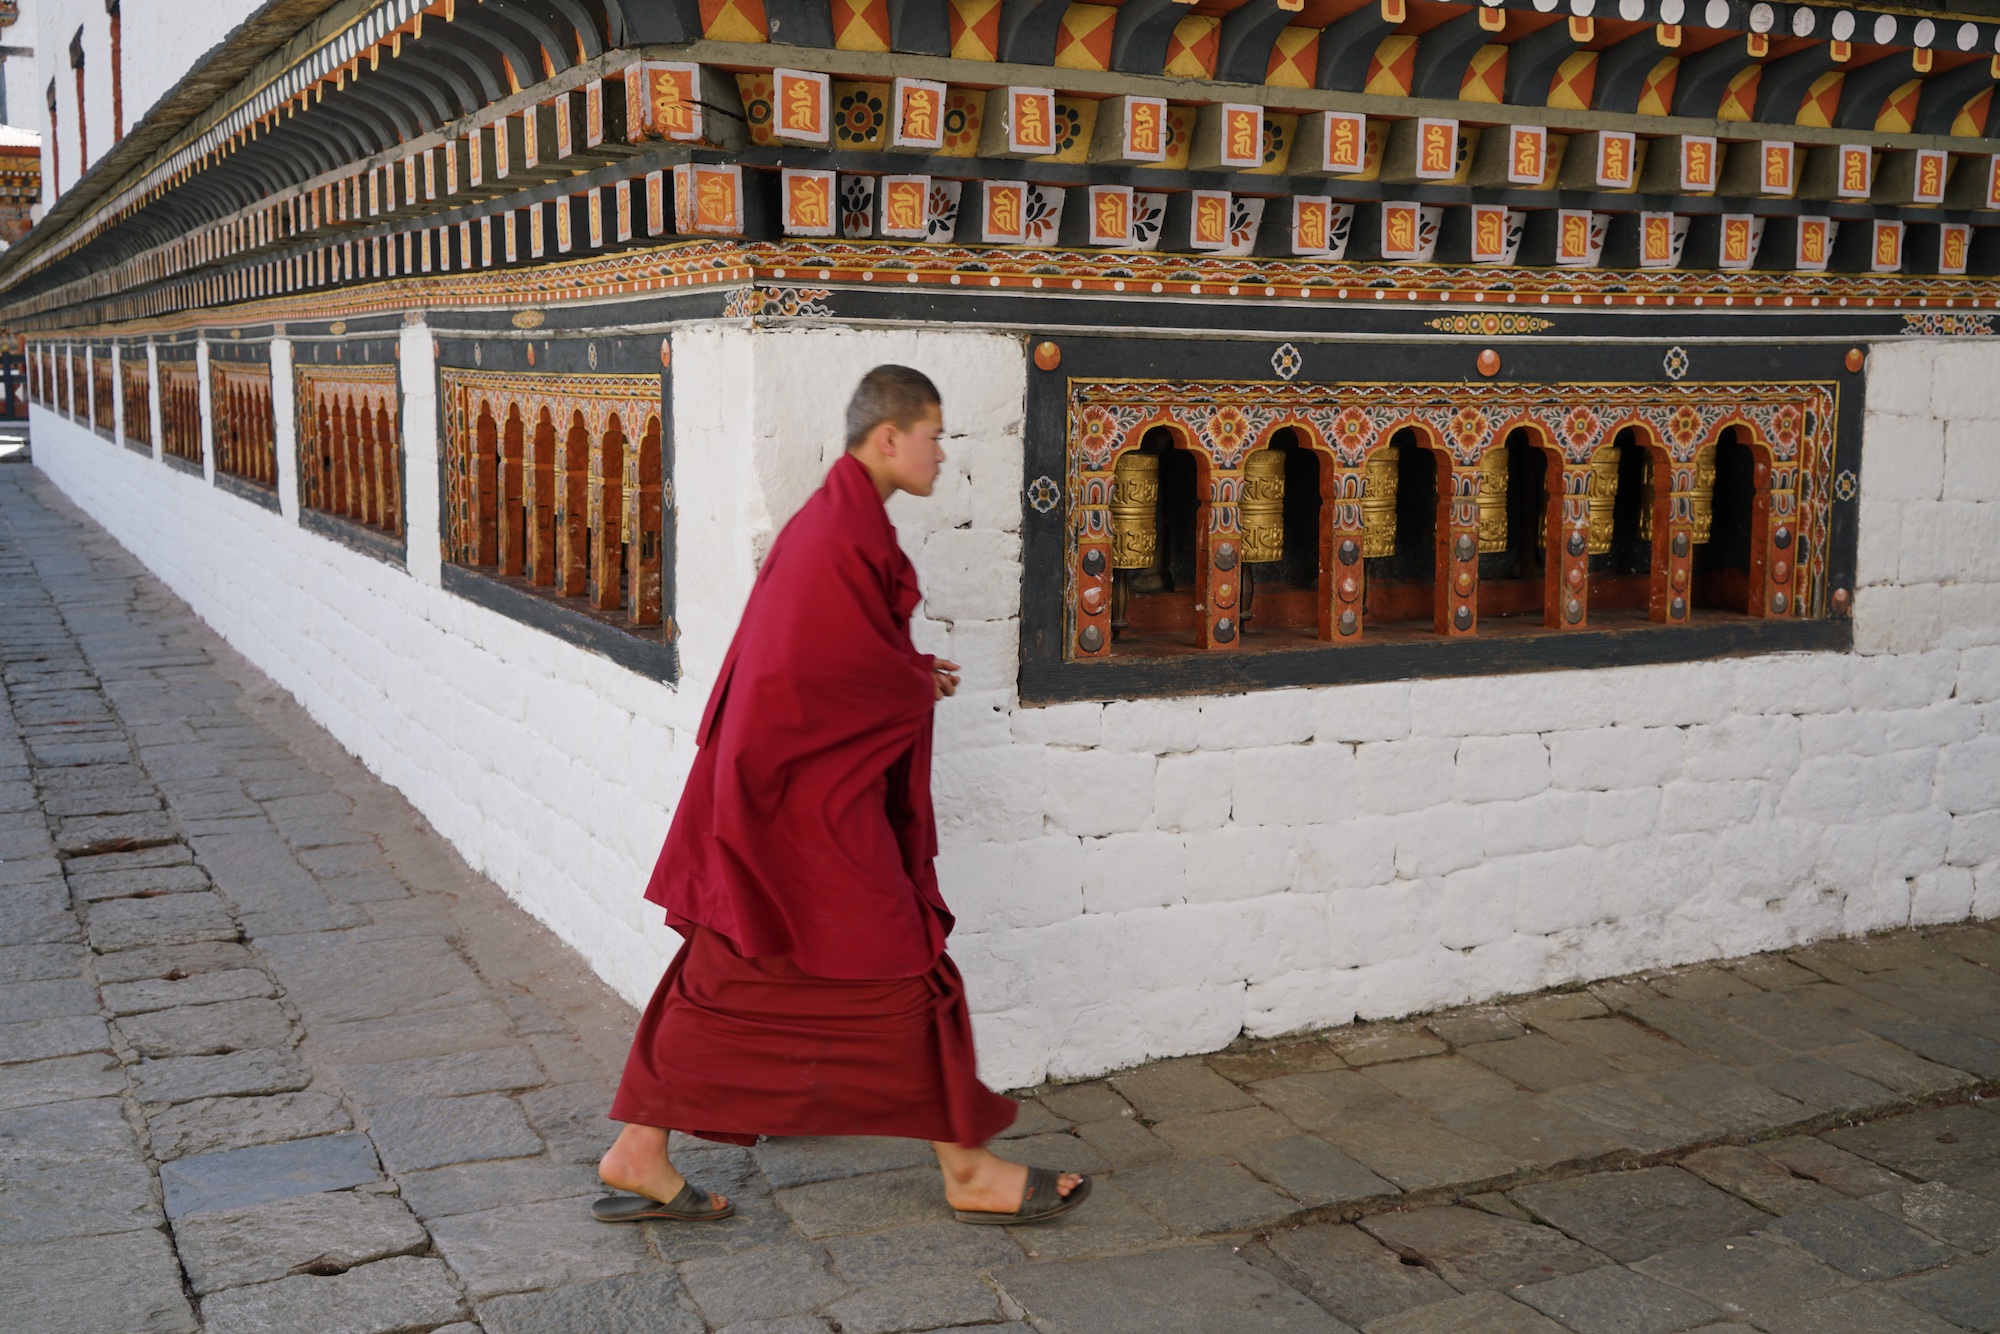 Bhutan-11-17-16a- DSC04405.jpg